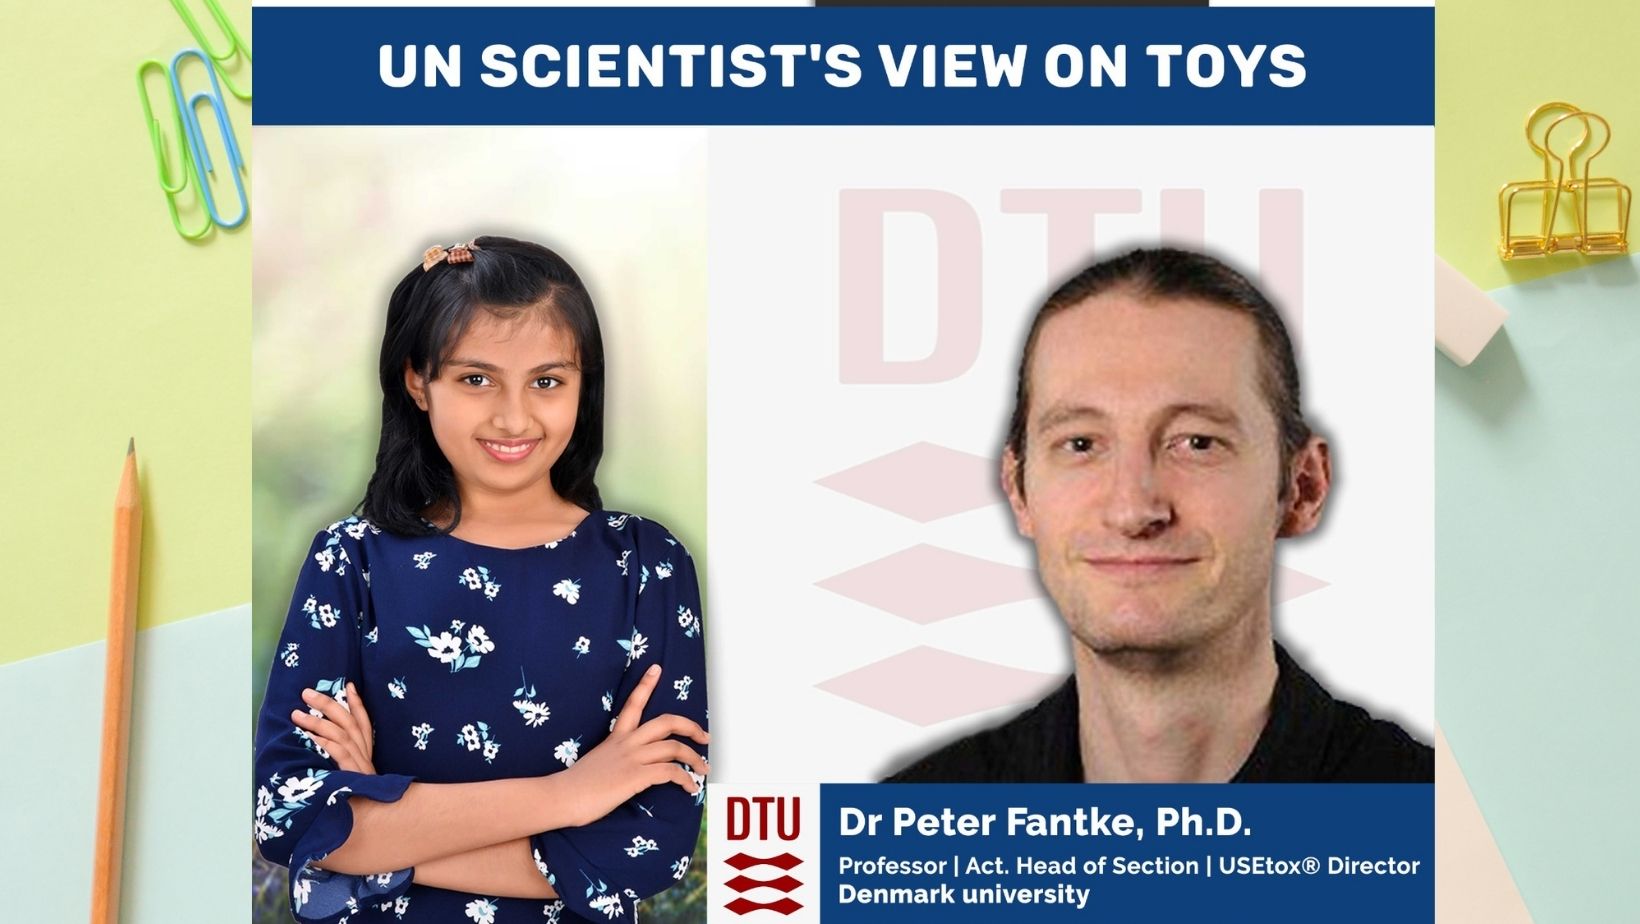 103: UN Scientist’s view on Toys – Dr Peter Fantke